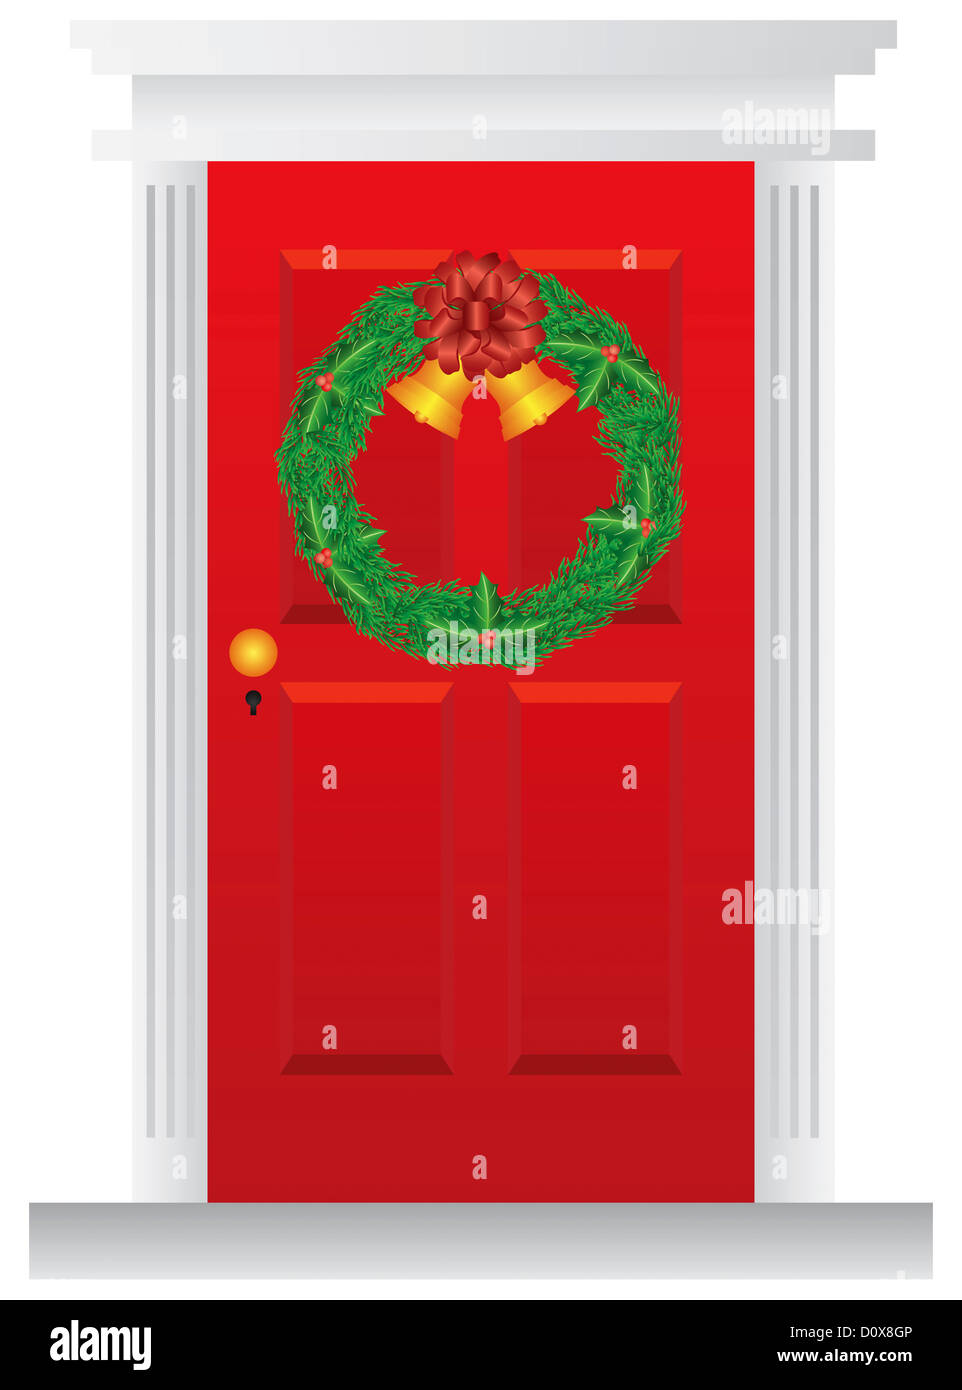 Couronne de Noël avec des clochettes d'or accroché sur la porte rouge avec attributs Illustration Banque D'Images